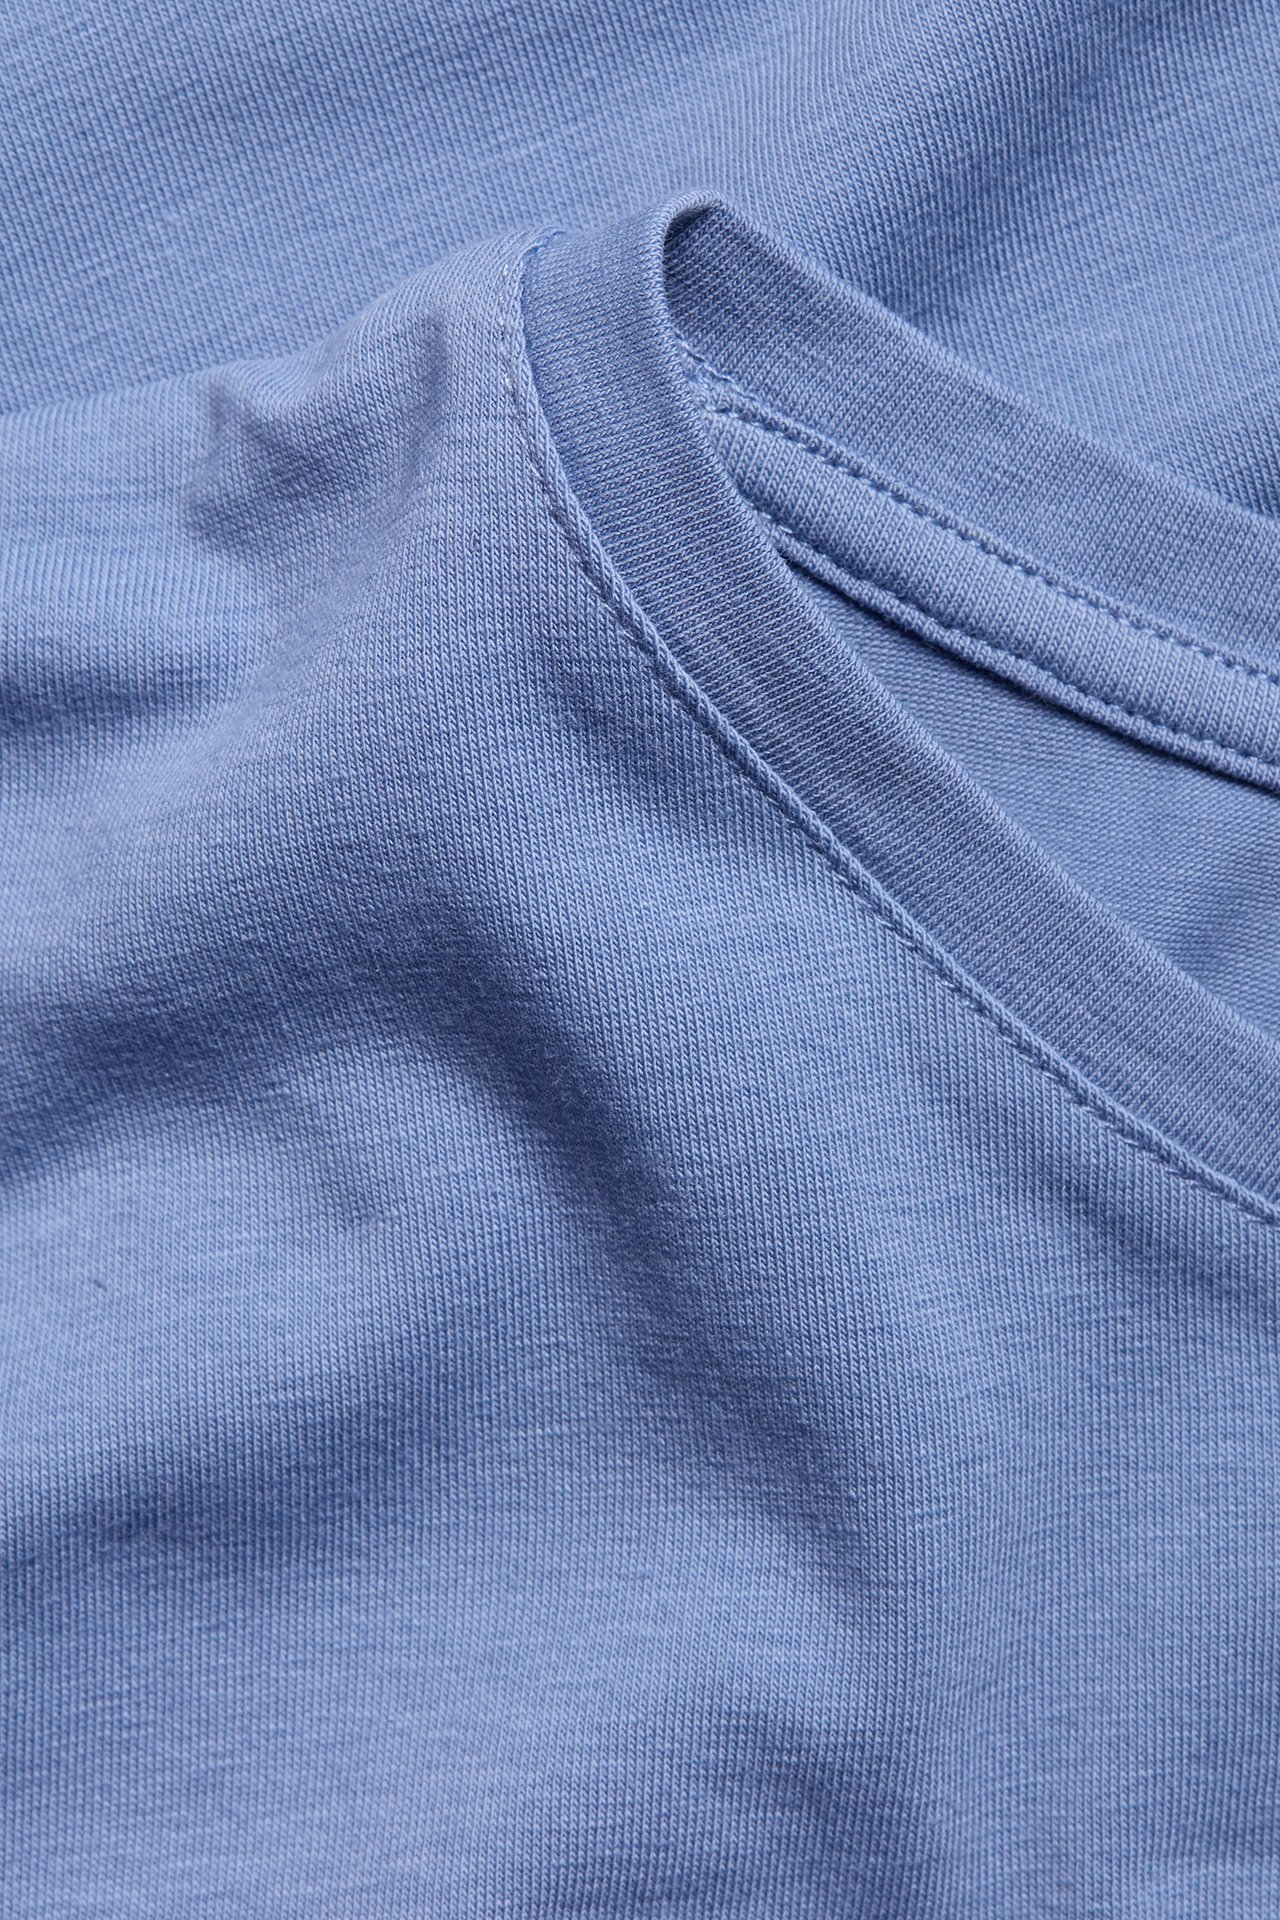 Koszulka basic z krótkim rękawem - Niebieski - 1